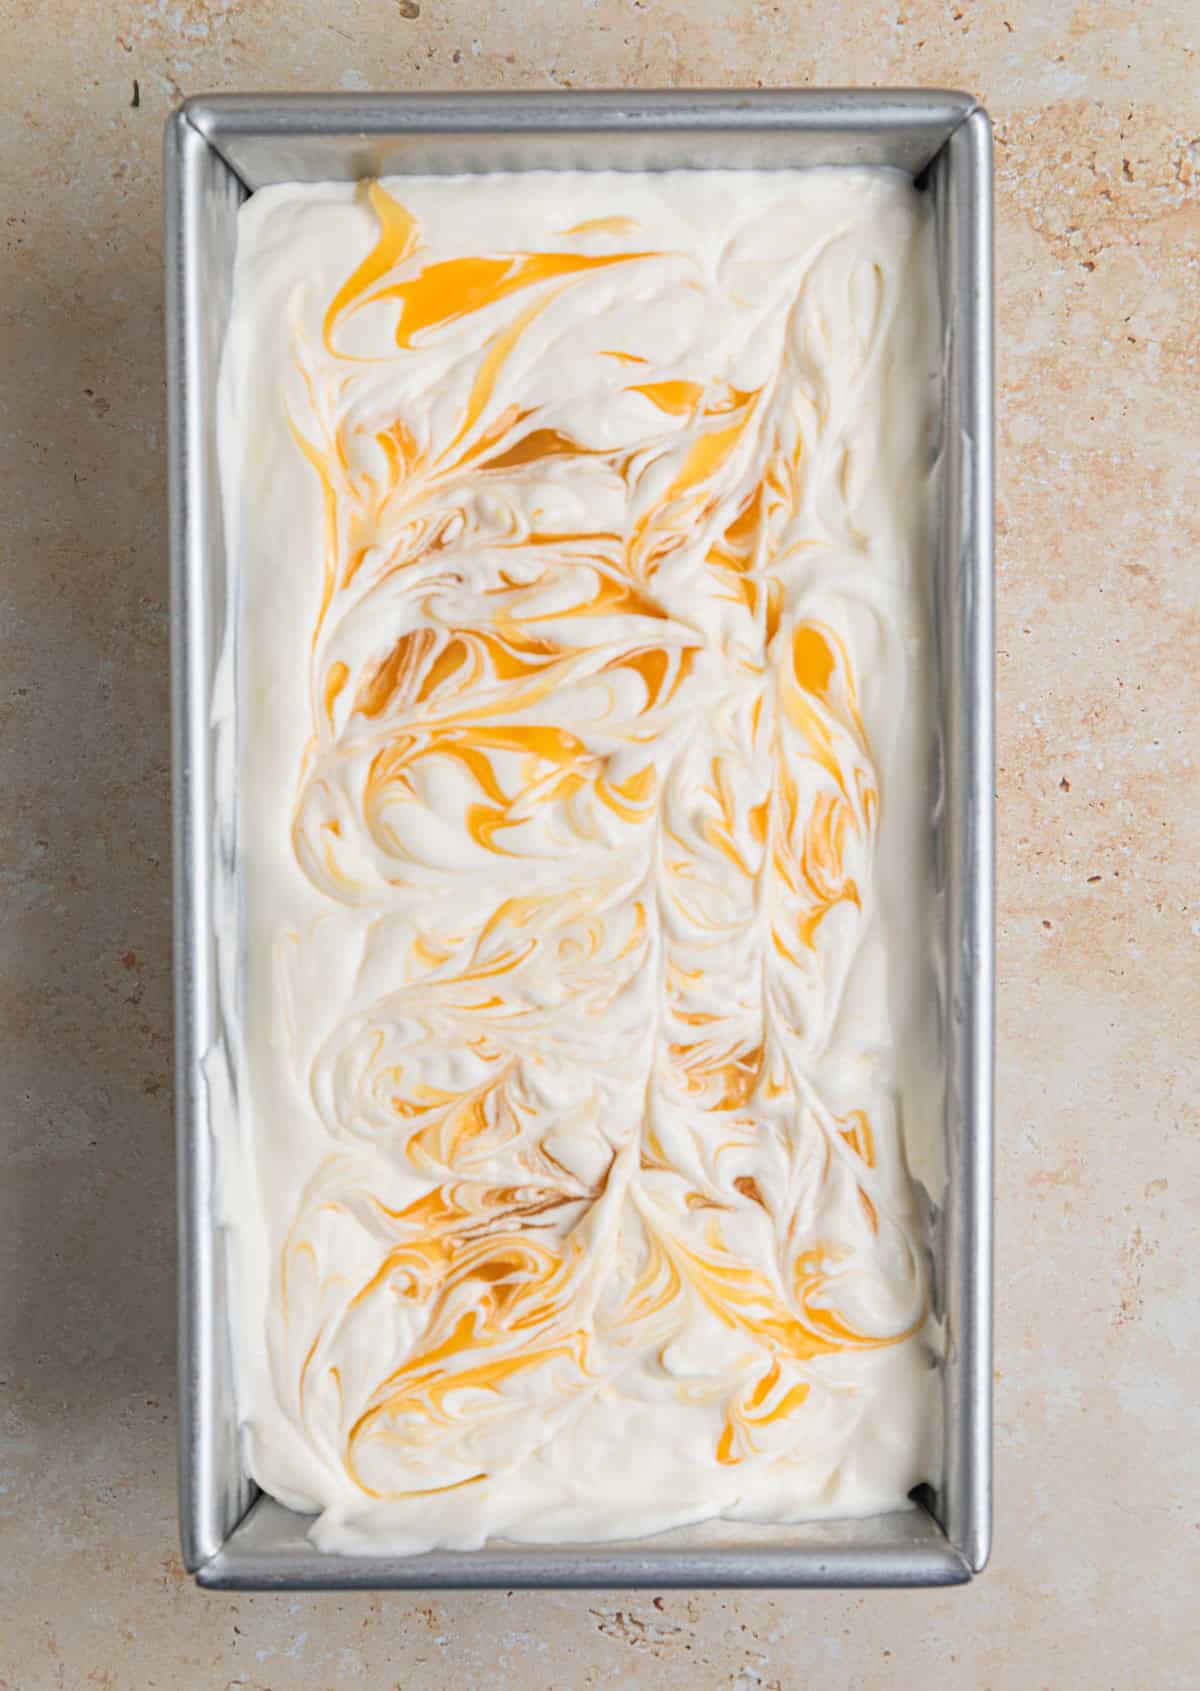 Lemon curd swirled into no churn lemon ice cream mixture before freezing.